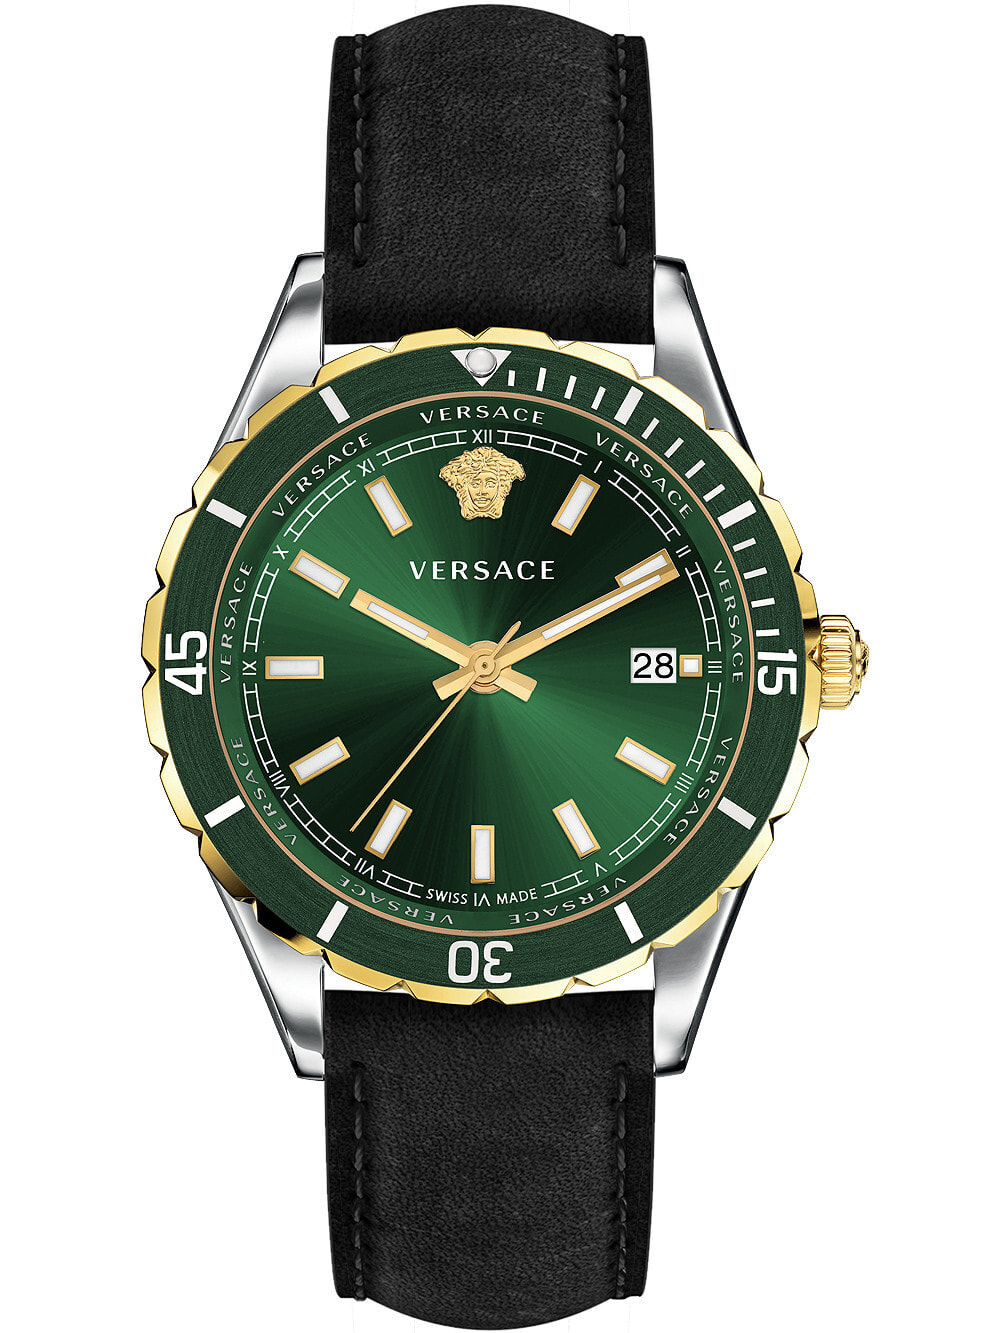 Мужские наручные часы с черным кожаным ремешком Versace VE3A00320 Hellenyium mens 42mm 5ATM